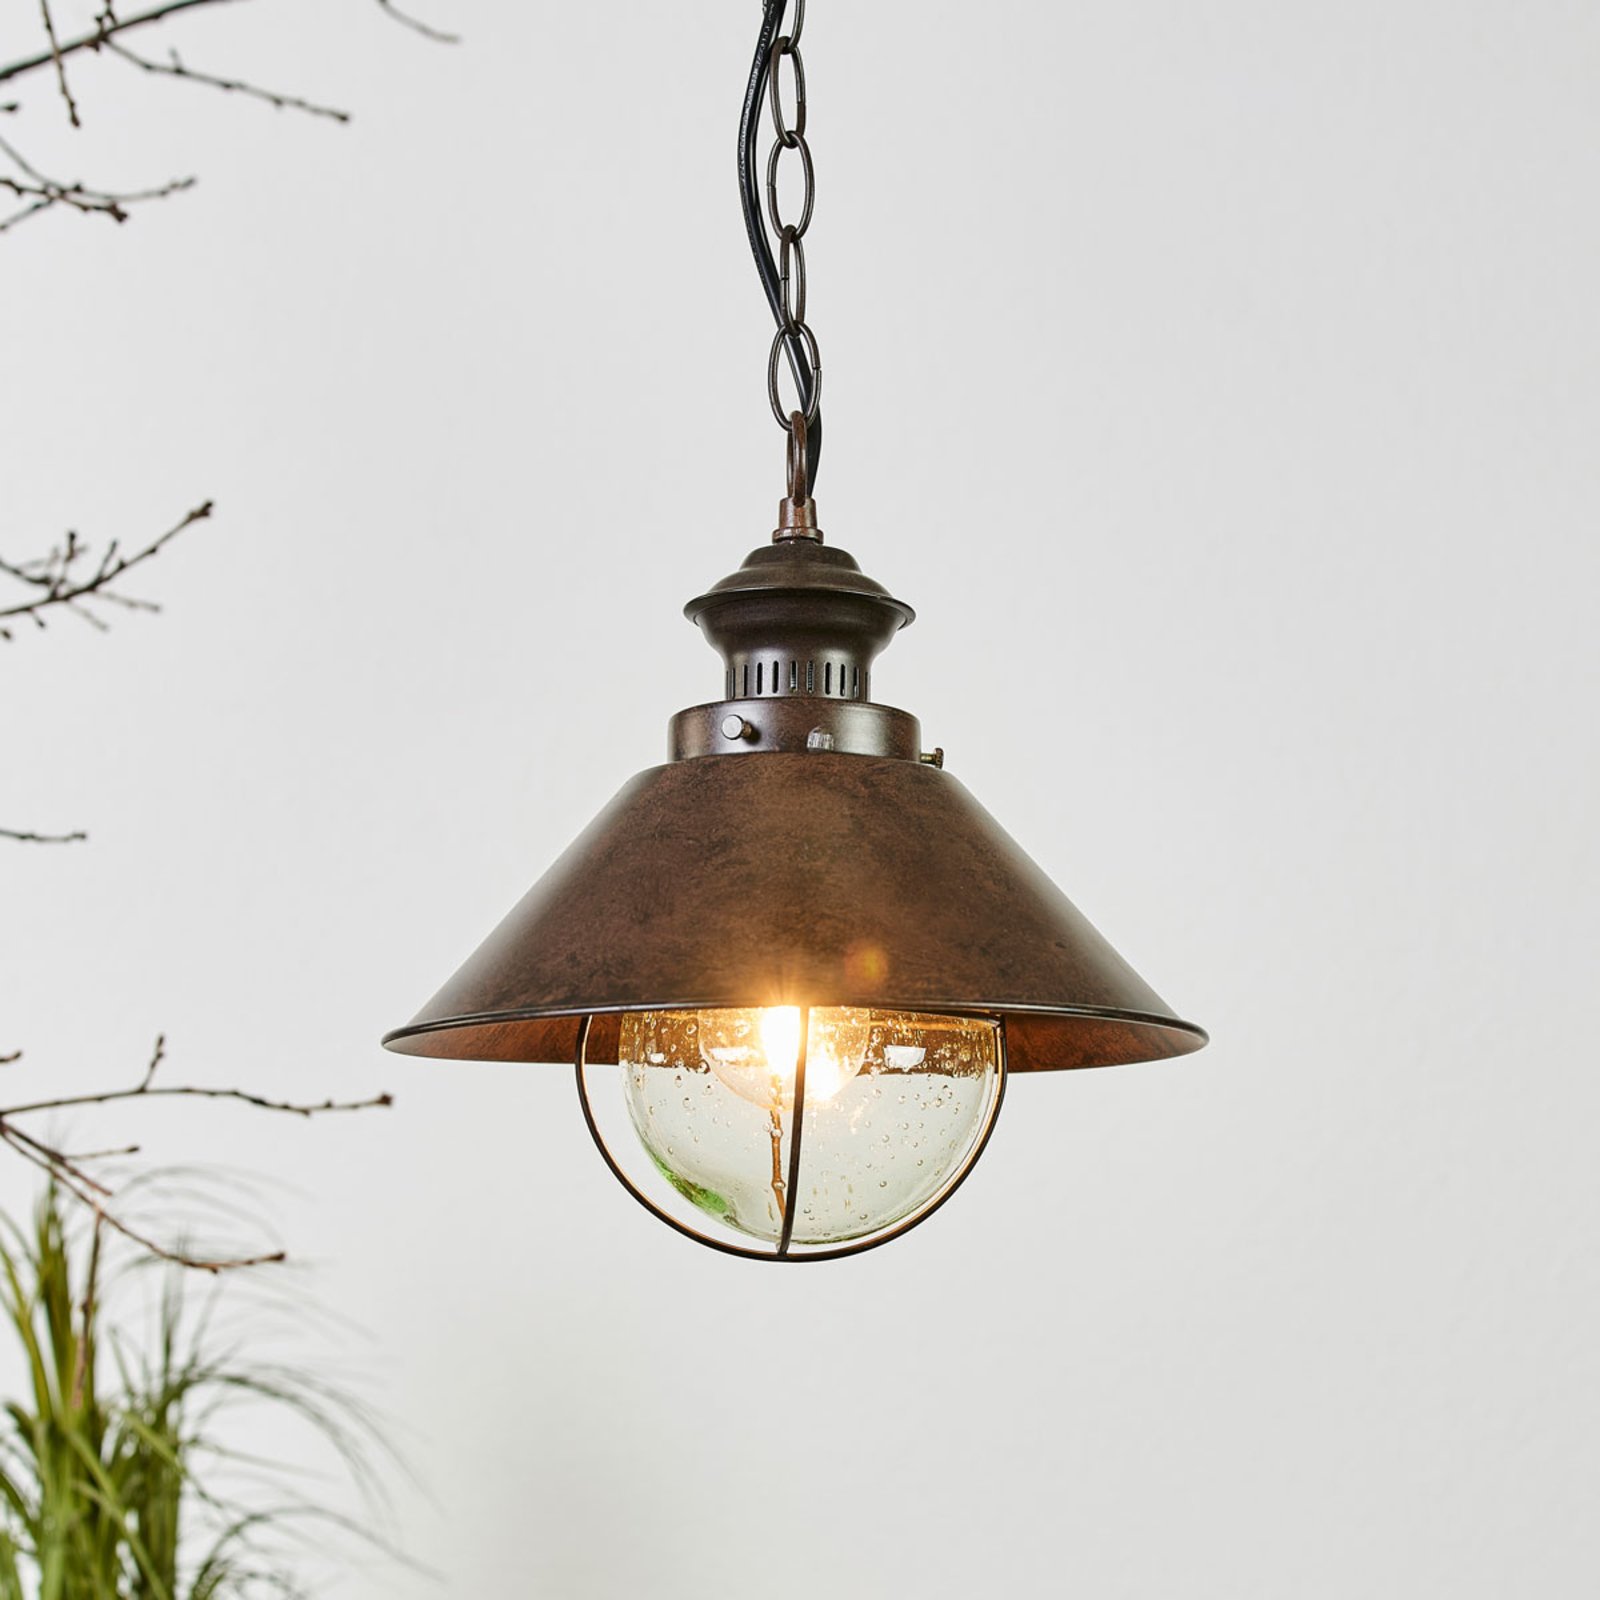 Lámpara colgante Náutica en diseño antiguo, 26 cm